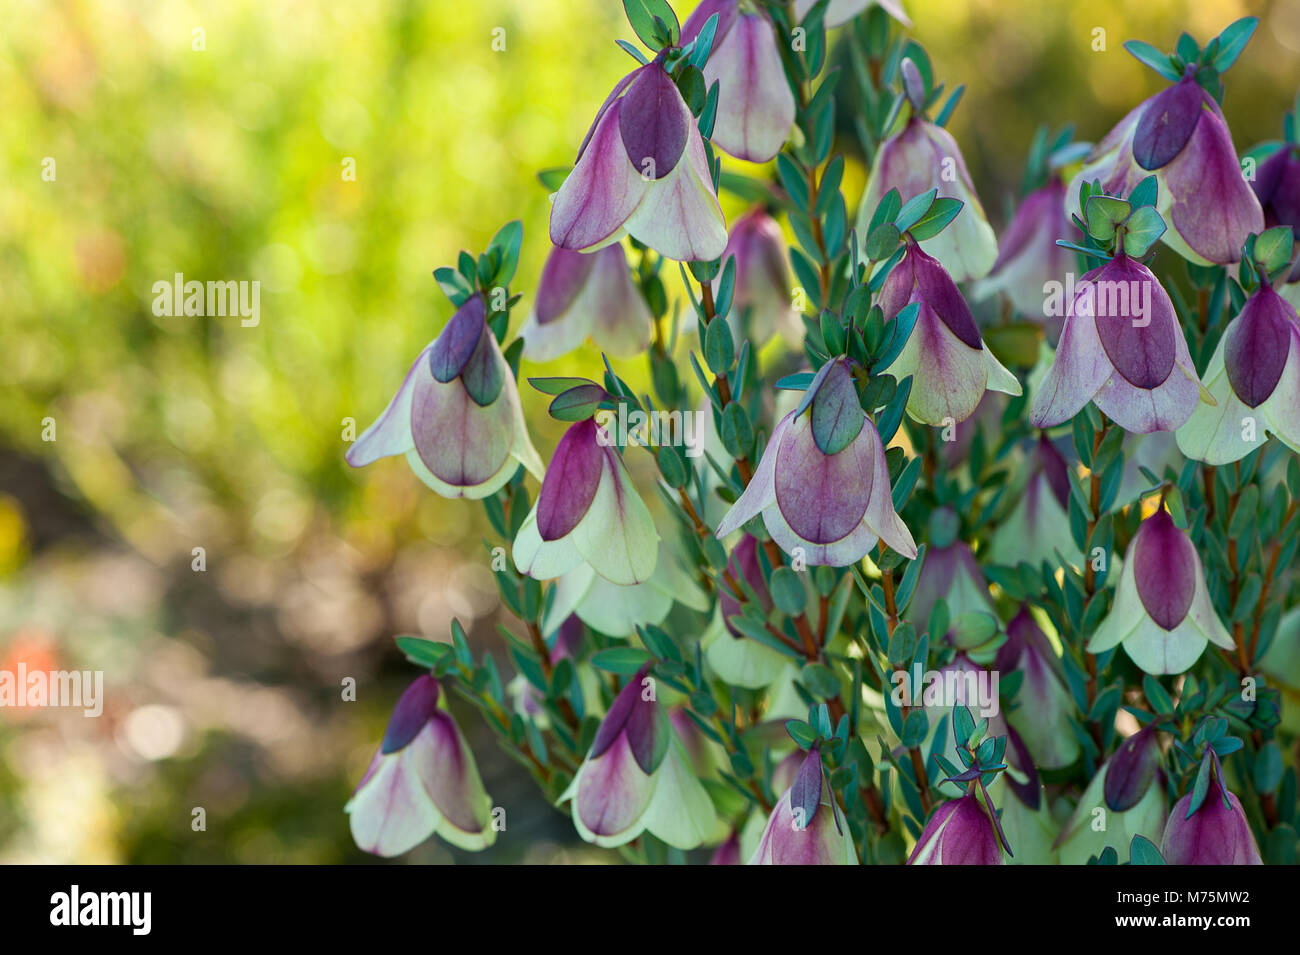 Pimelia physodes, connu sous le nom de Bell Qualup est originaire de l'ouest de l'Australie. Violet et jaune délicat pendentif, têtes sur un arrière-plan flou vert/gris Banque D'Images